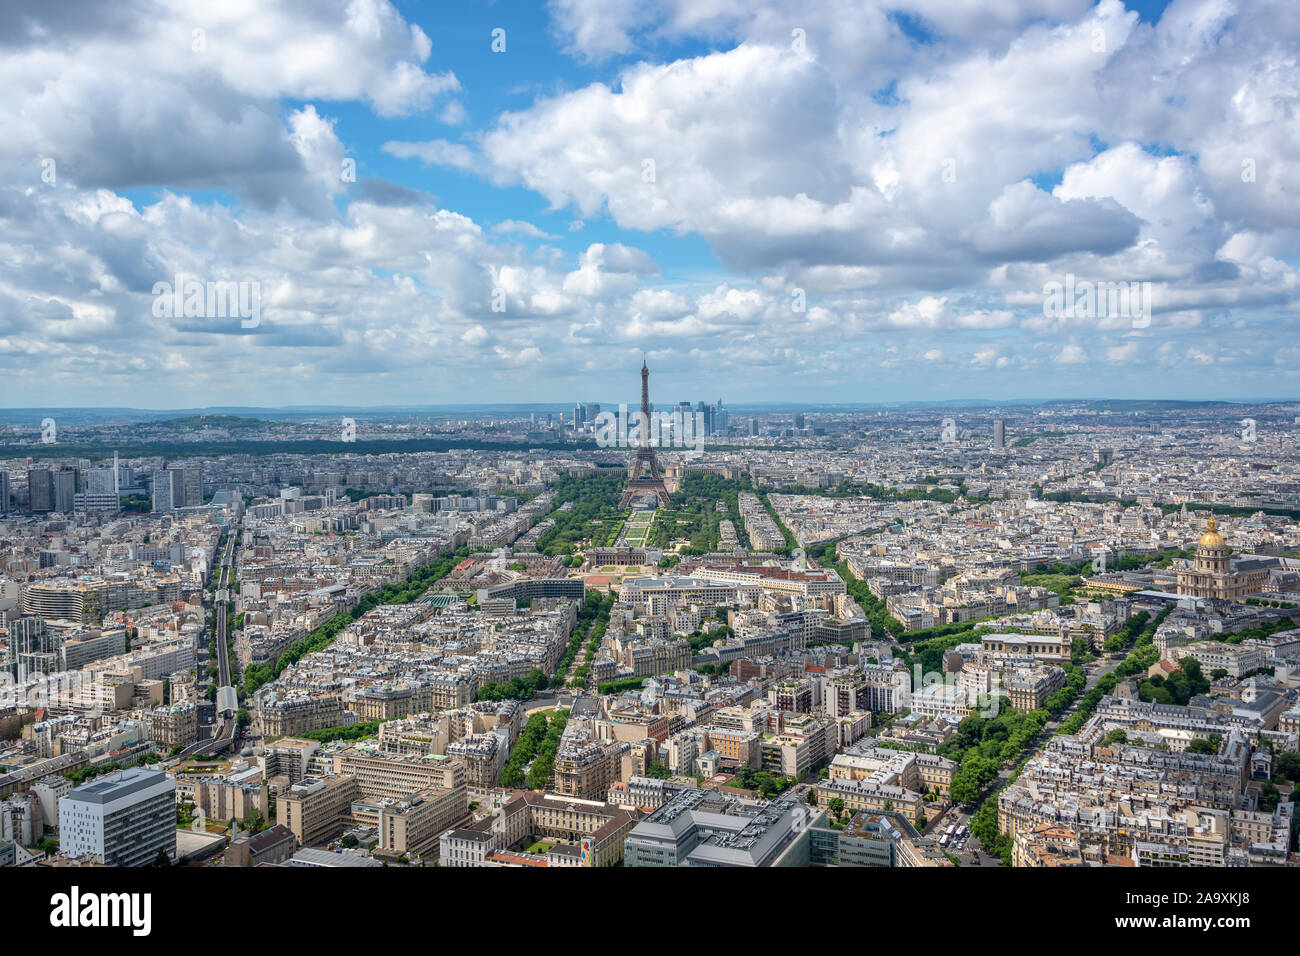 Vue panoramique aérienne de Paris avec la Tour Eiffel, la France et l'Europe city travel concept Banque D'Images